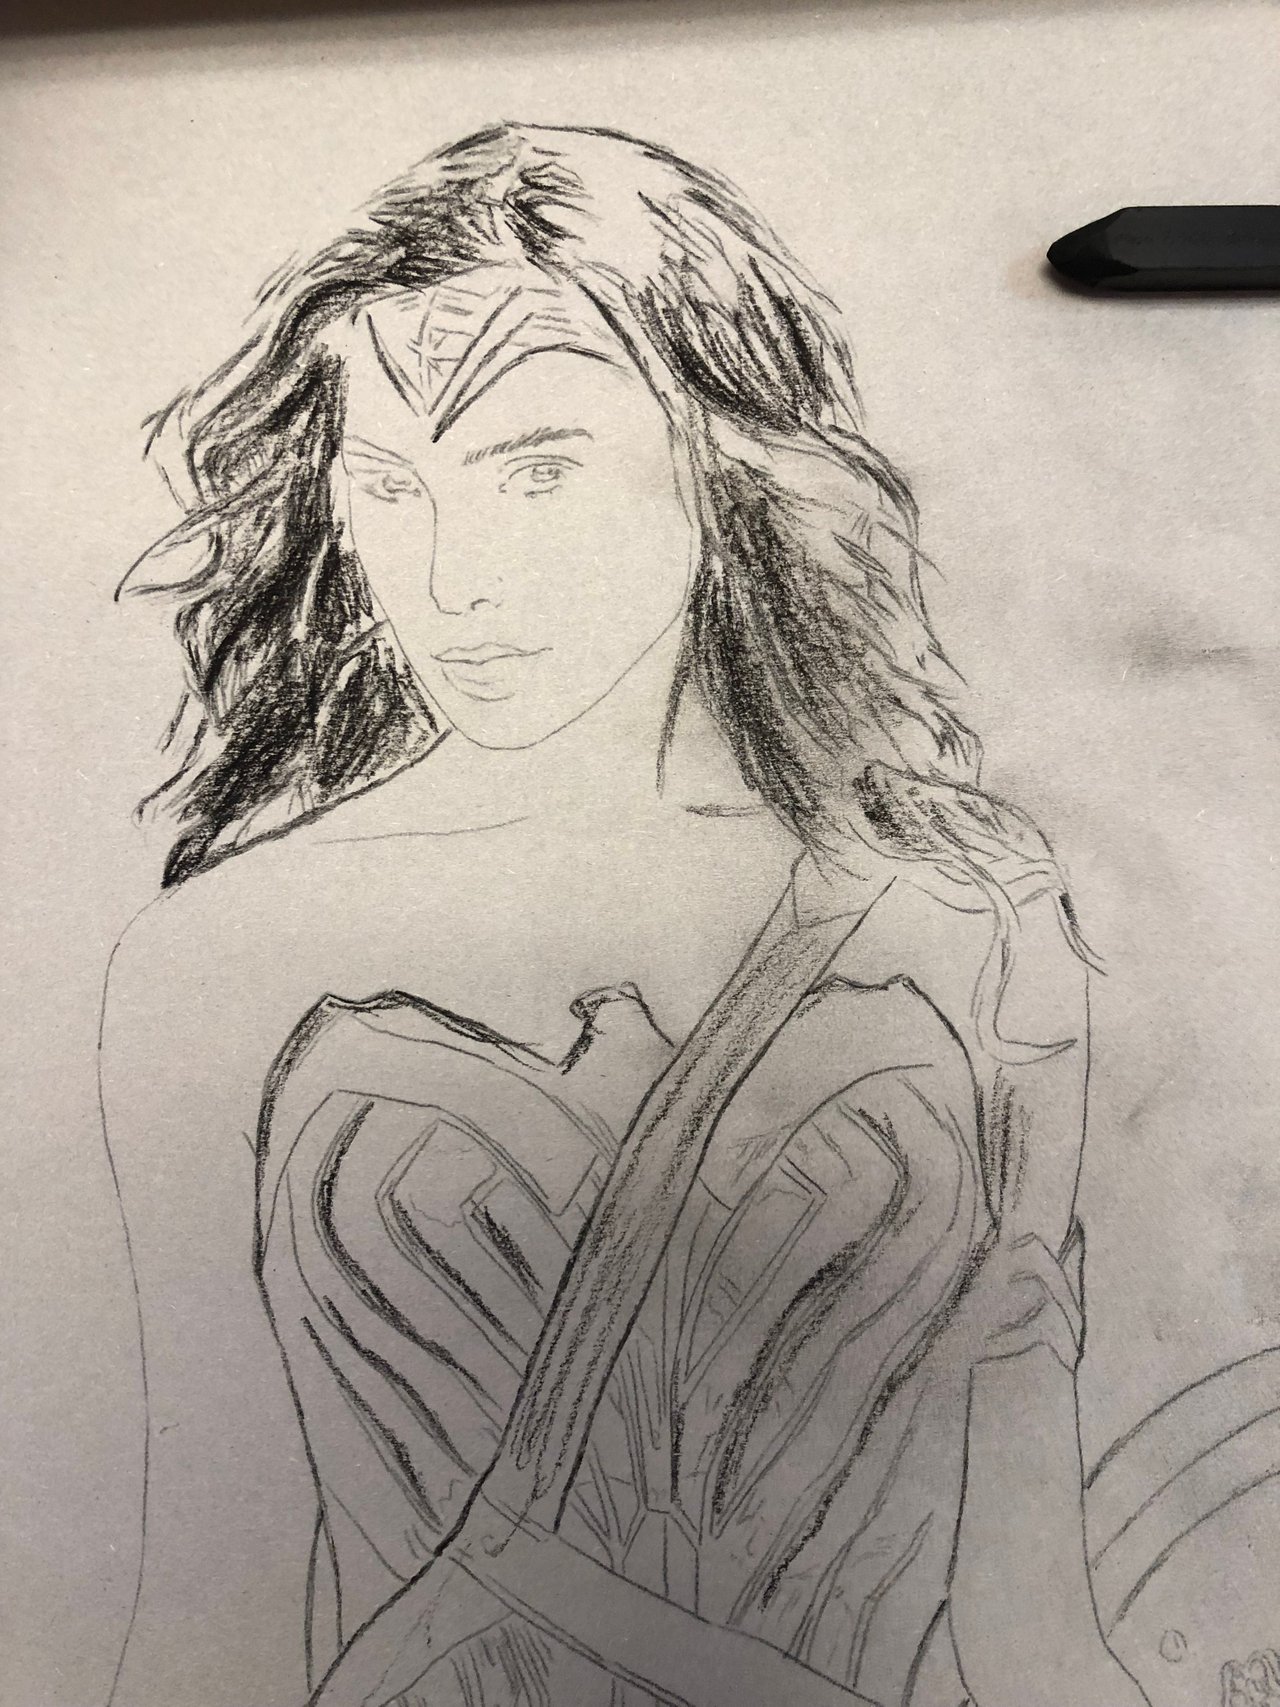 Jeeva Sk Official on Twitter Wonder Woman in Pencil Sketch 2021  WonderWoman pencilsketch httpstco4t1JCWgY0r  Twitter